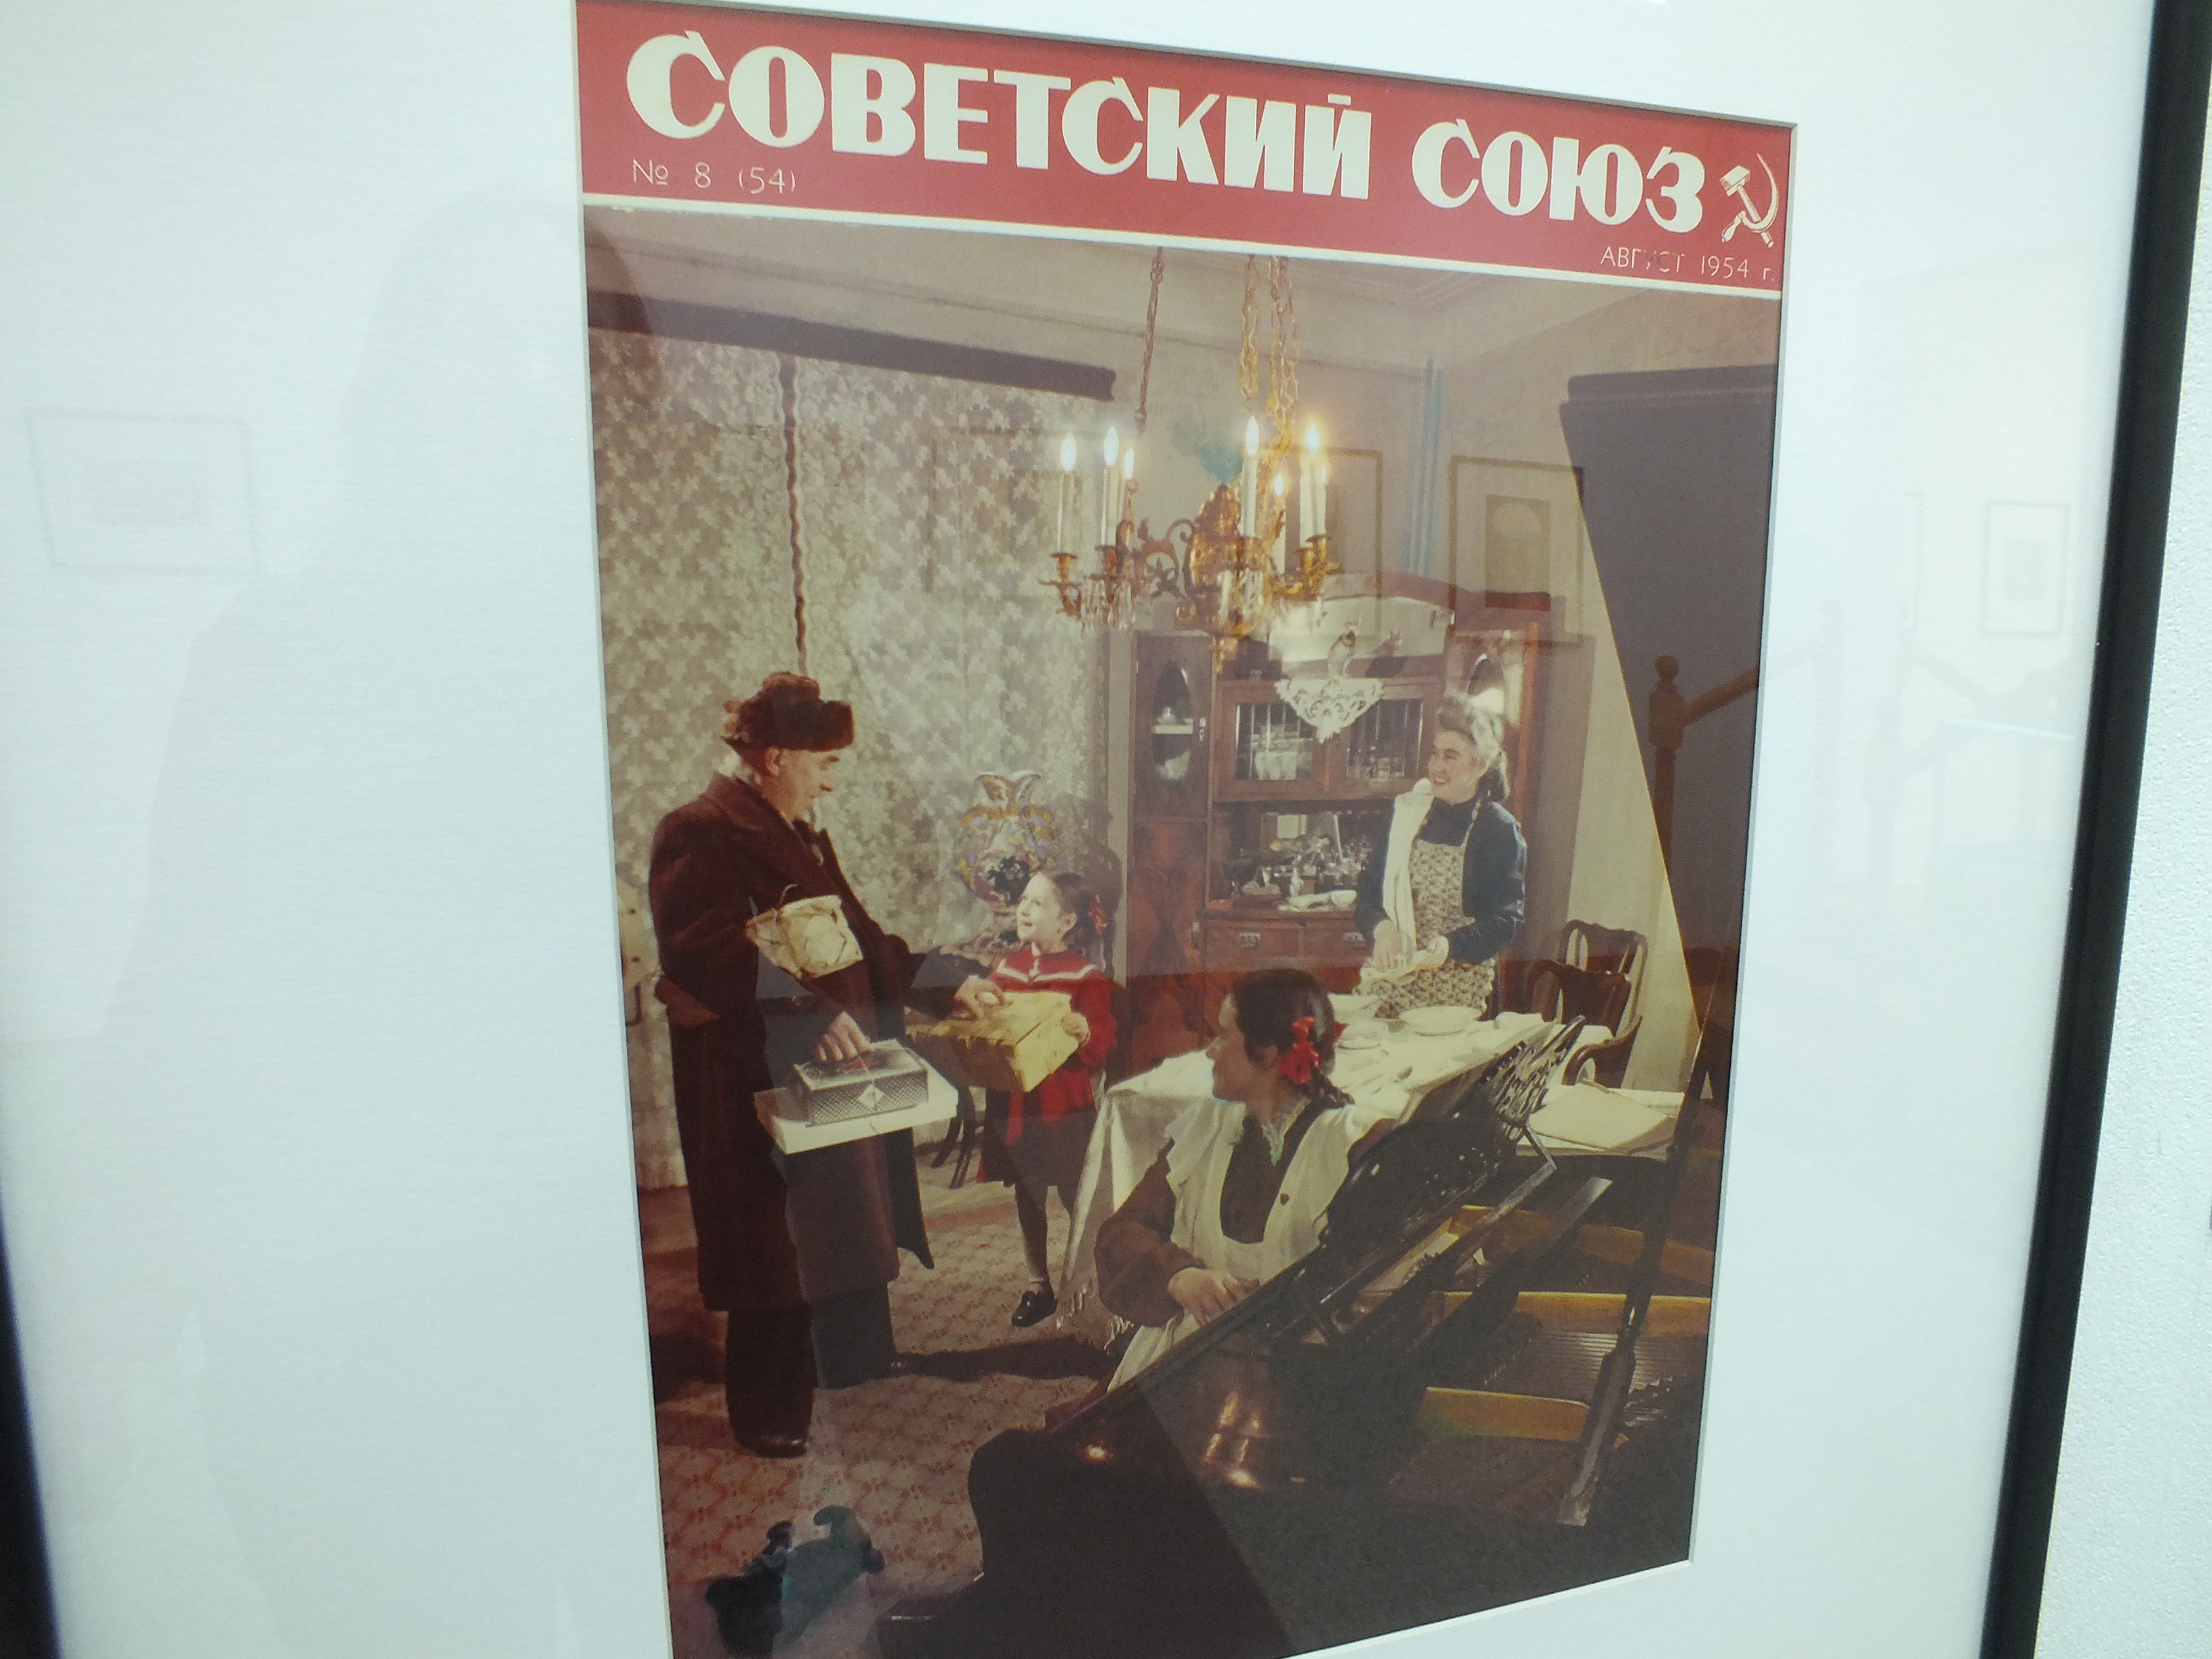 Фотографический первоцвет: выставка истории цветной фотографии открылась в Нижнем Новгороде - фото 10